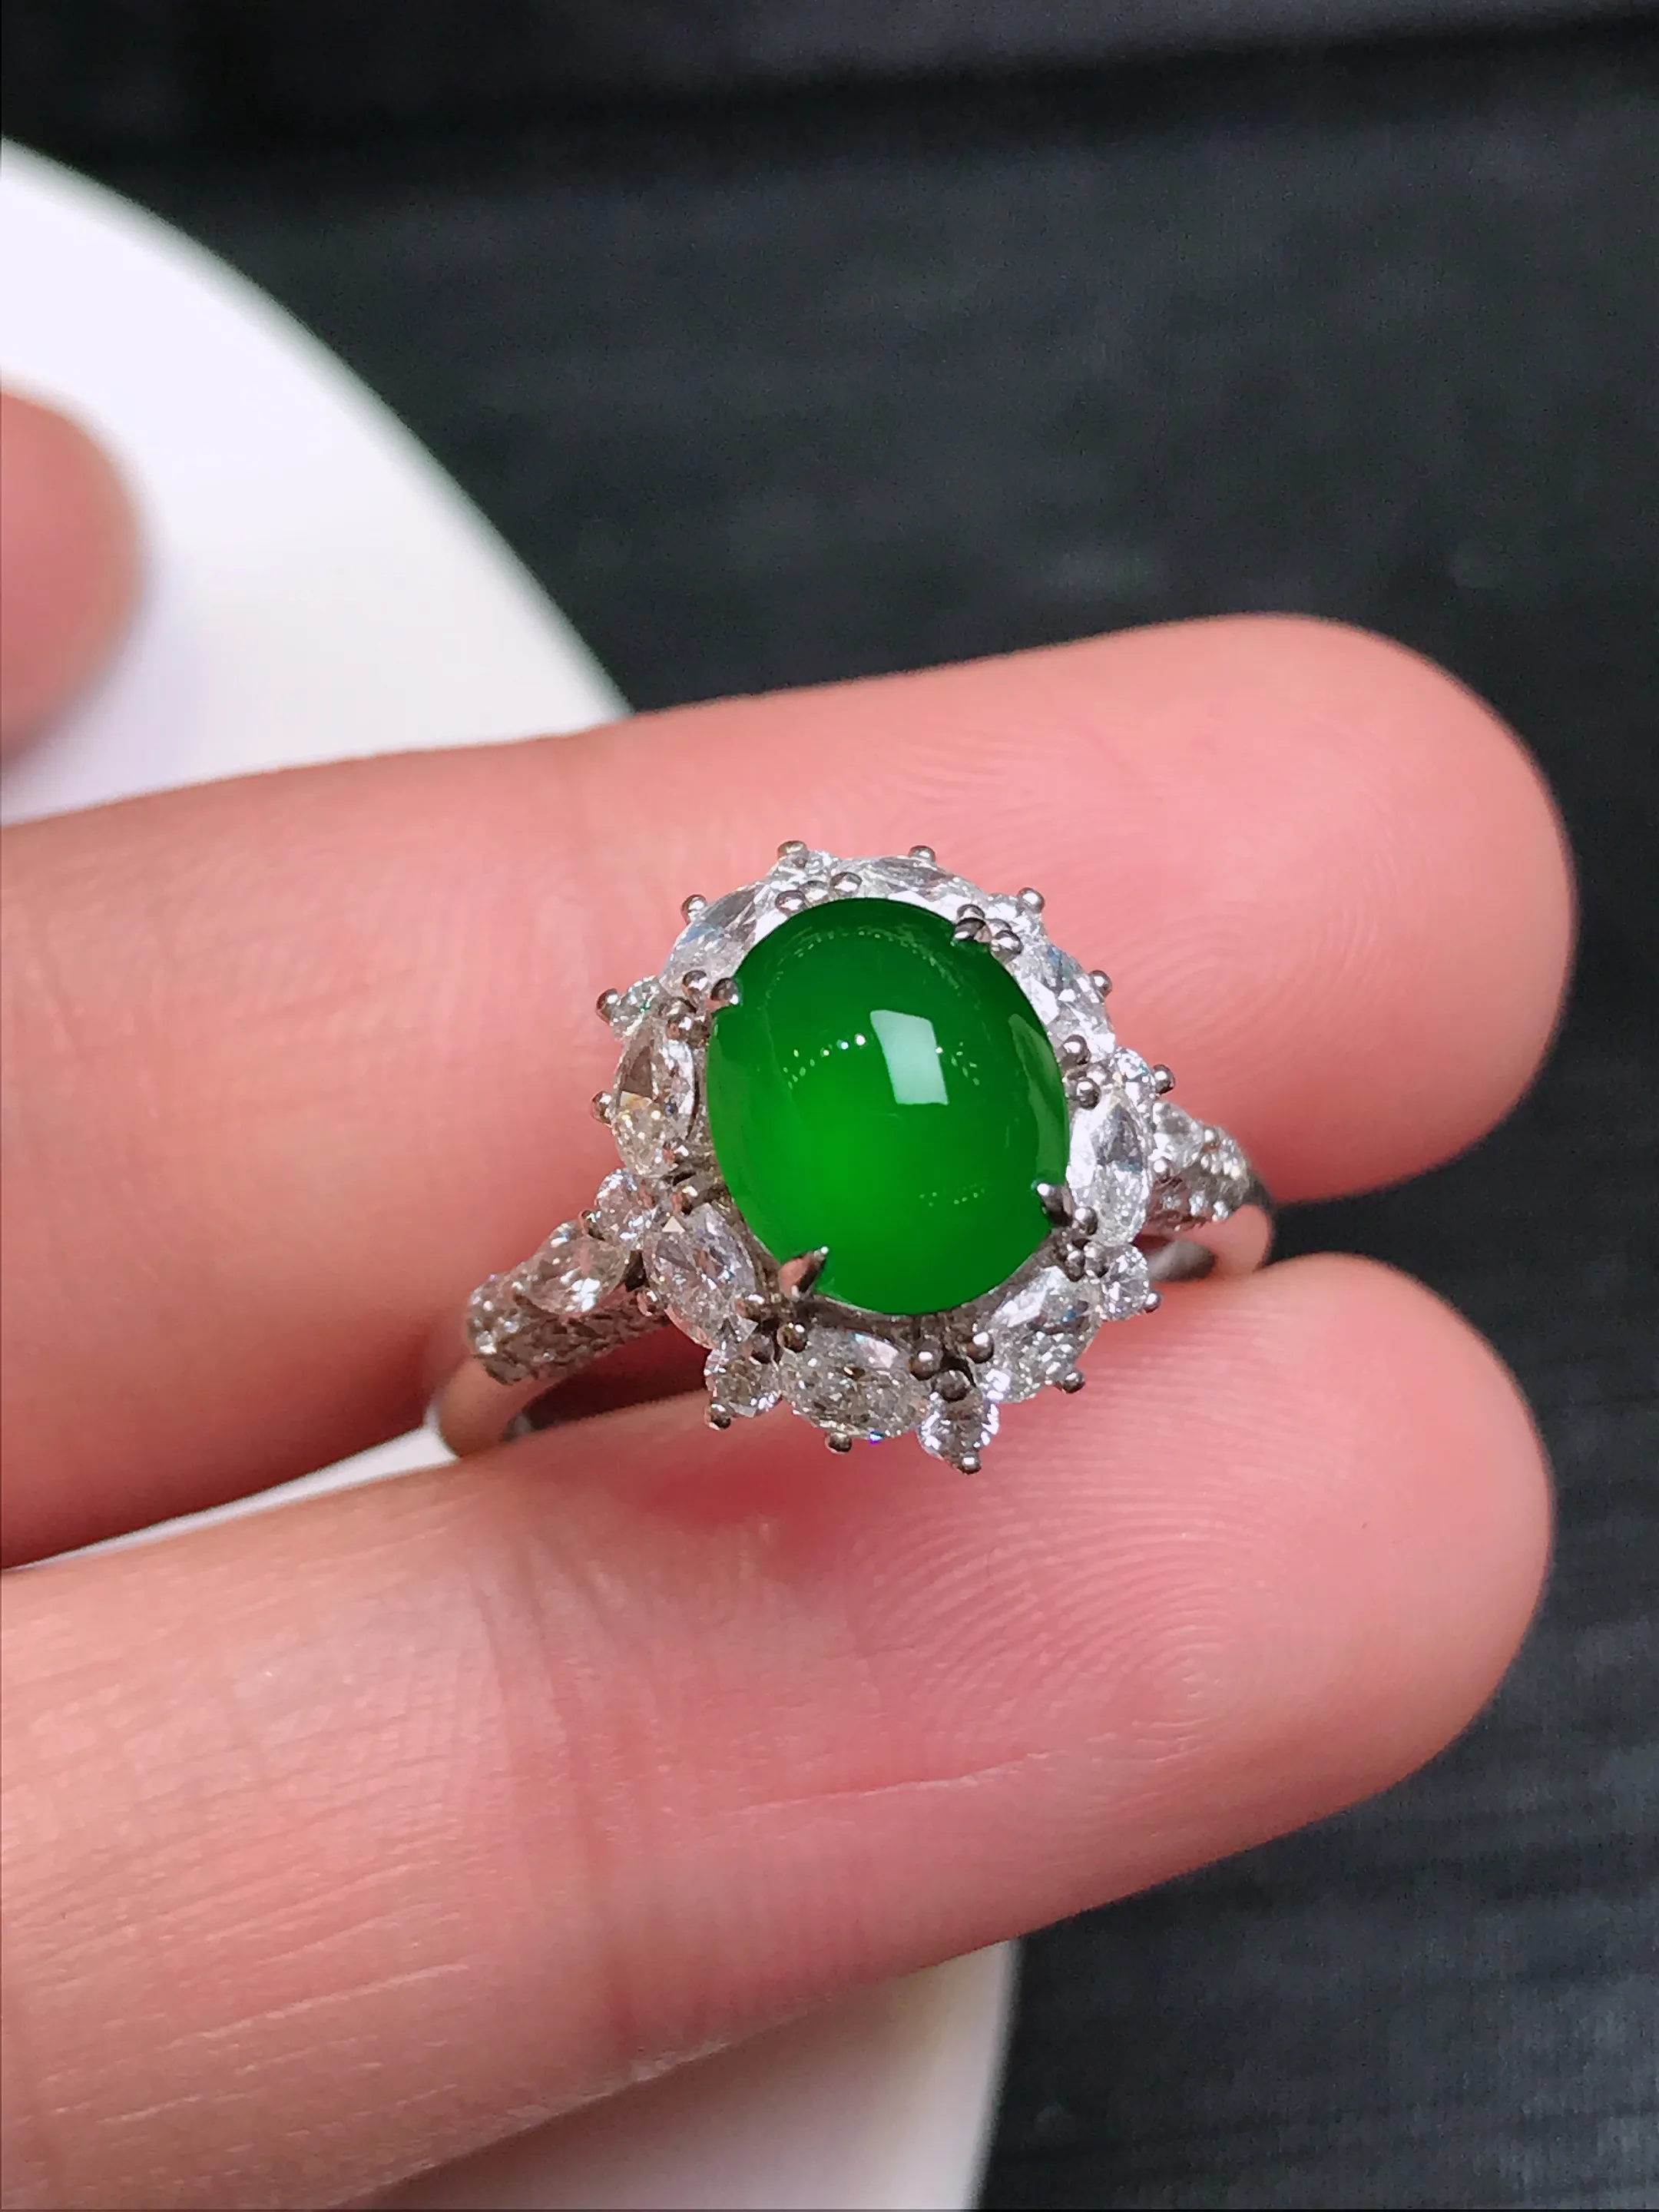 严选推荐戒指，老坑冰种满色帝王绿戒指，18k金钻镶嵌而成，简约时尚，品相佳，佩戴效果佳，尽显气质。种水很好，晶体结构致密，起强玻璃光泽。晶莹透亮，美感十足。高性价比，值得入手。裸石直径约8.6-7毫米